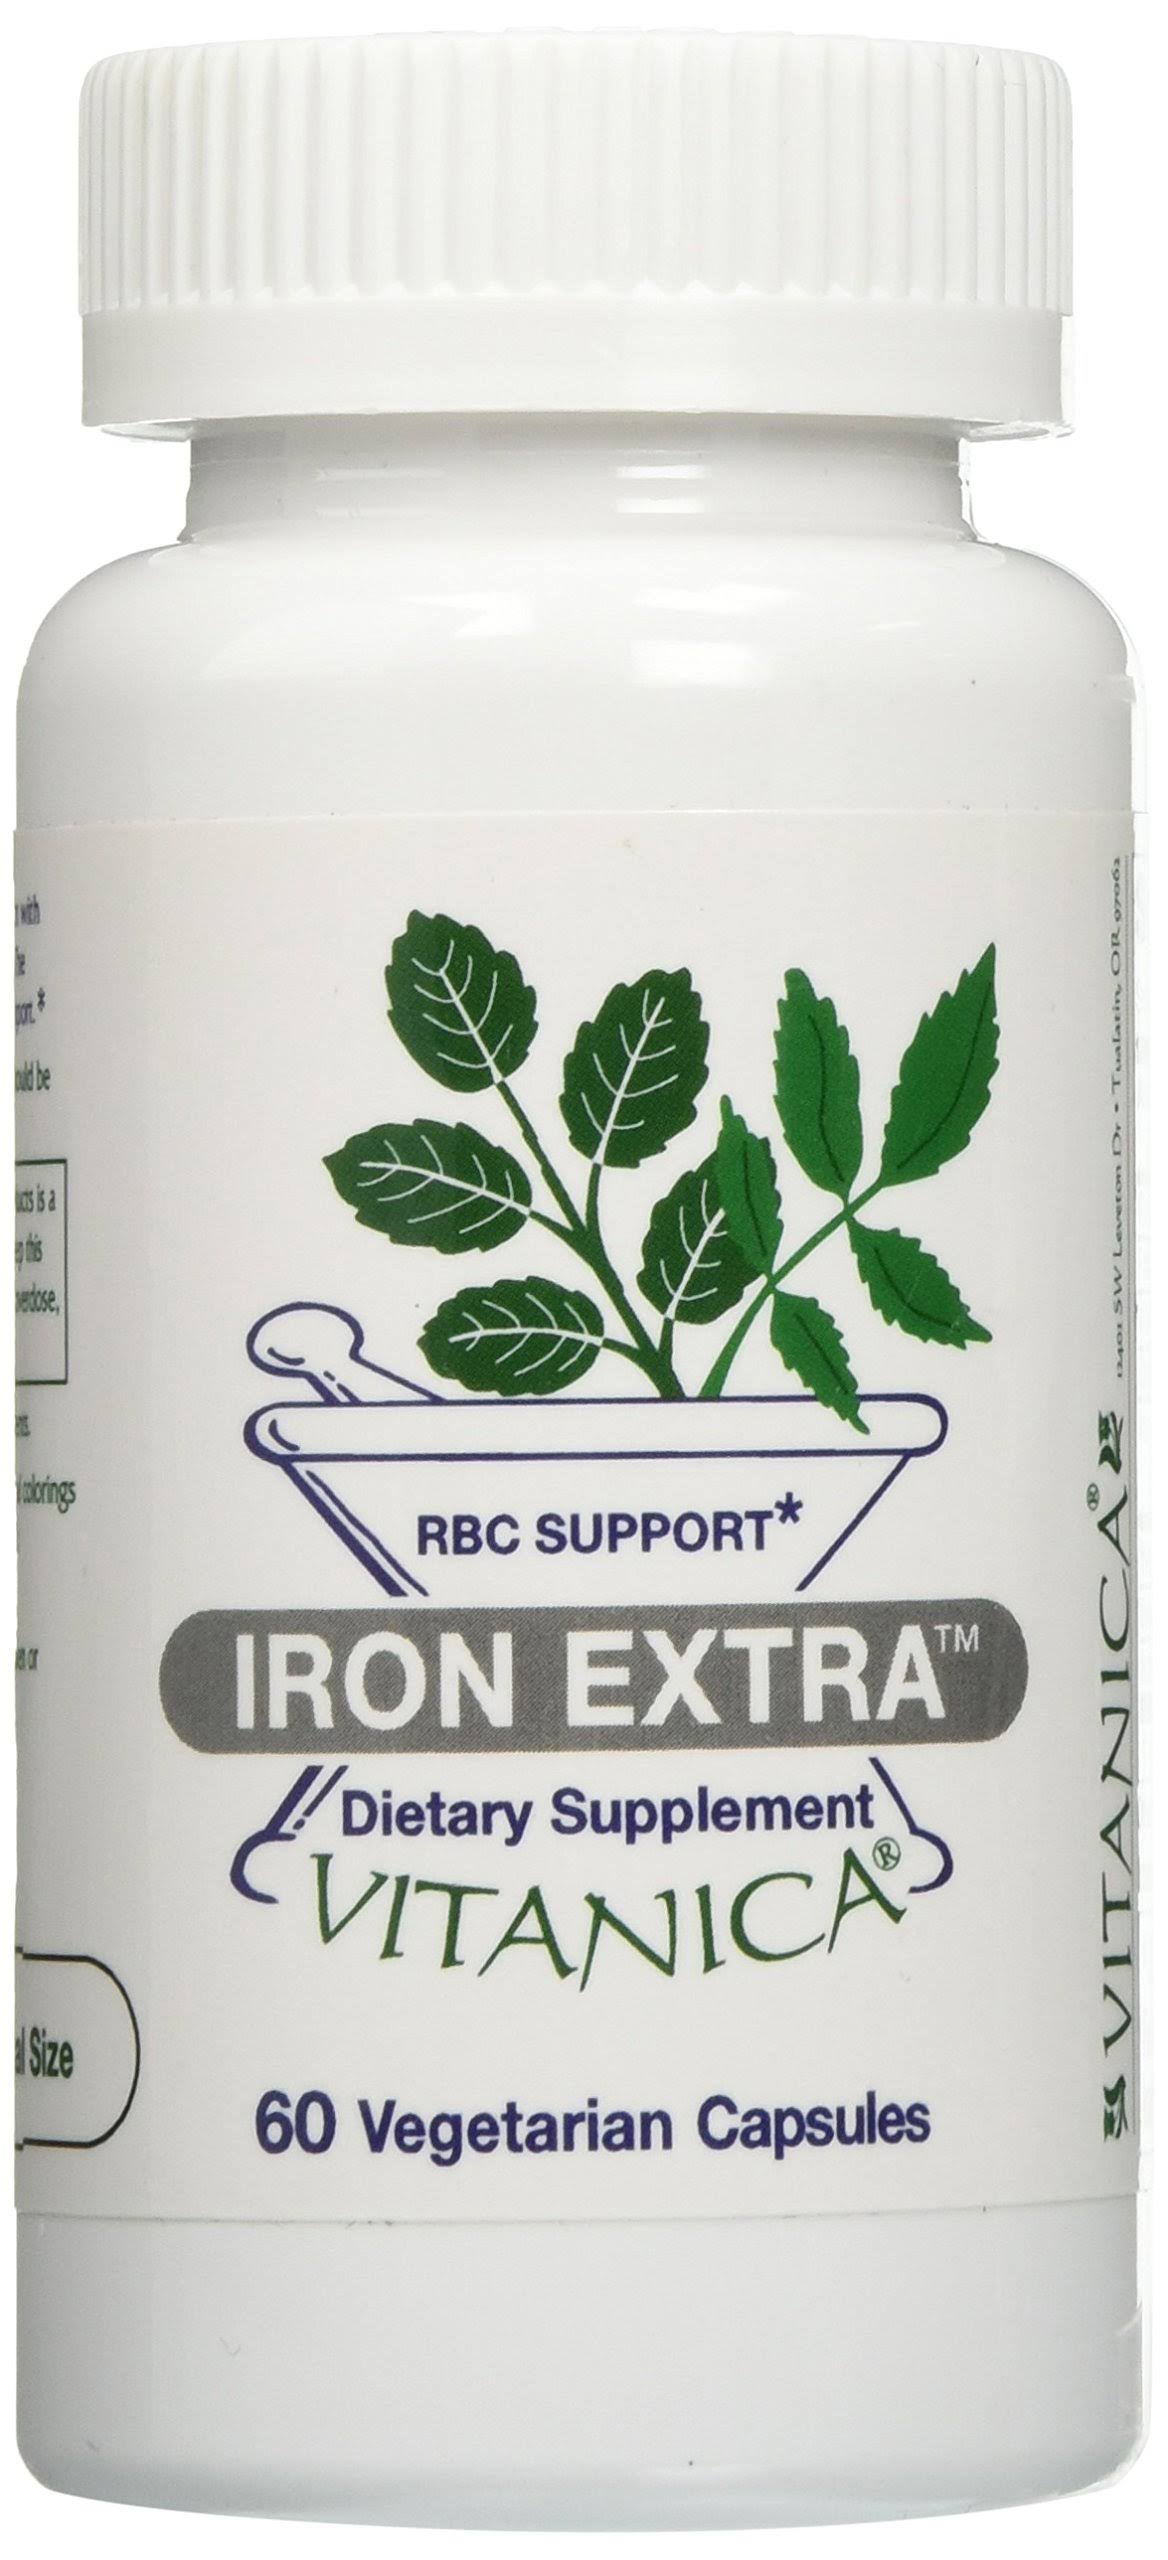 Vitanica Iron Extra Supplement - 60 Vegetarian Capsules